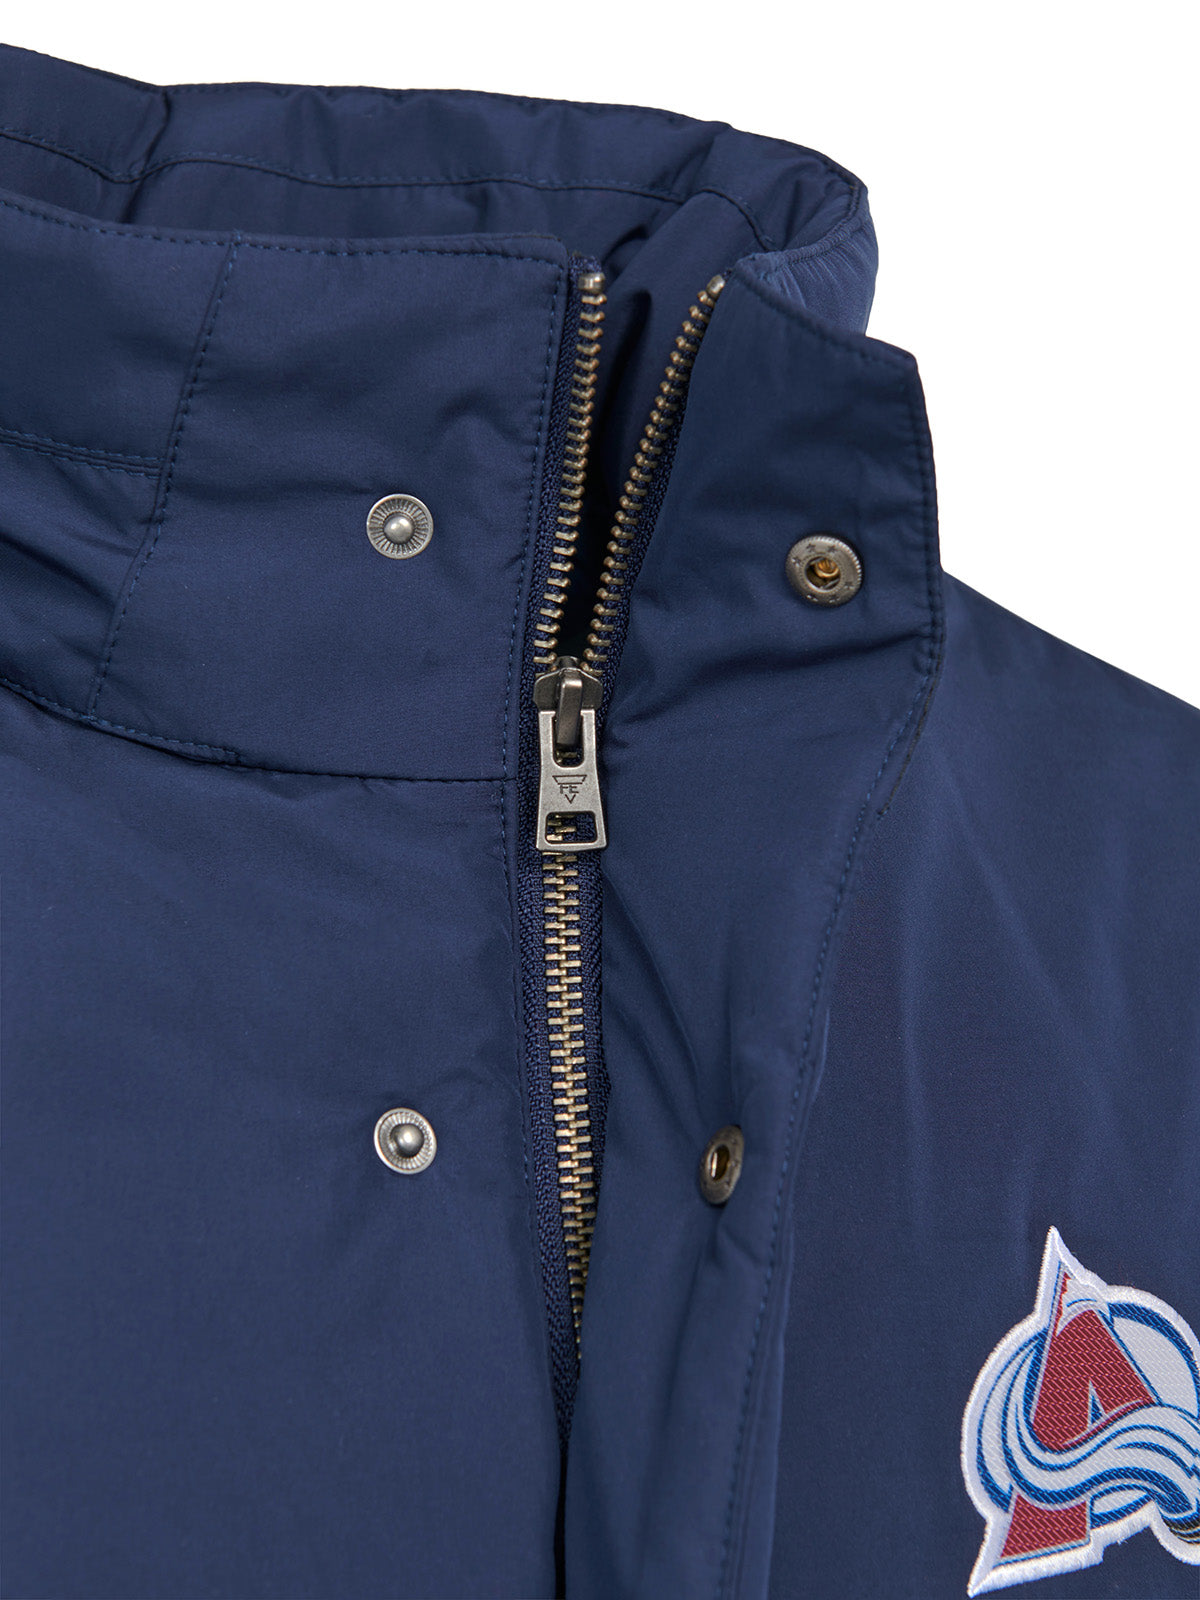 Colorado Avalanche Coach's Jacket